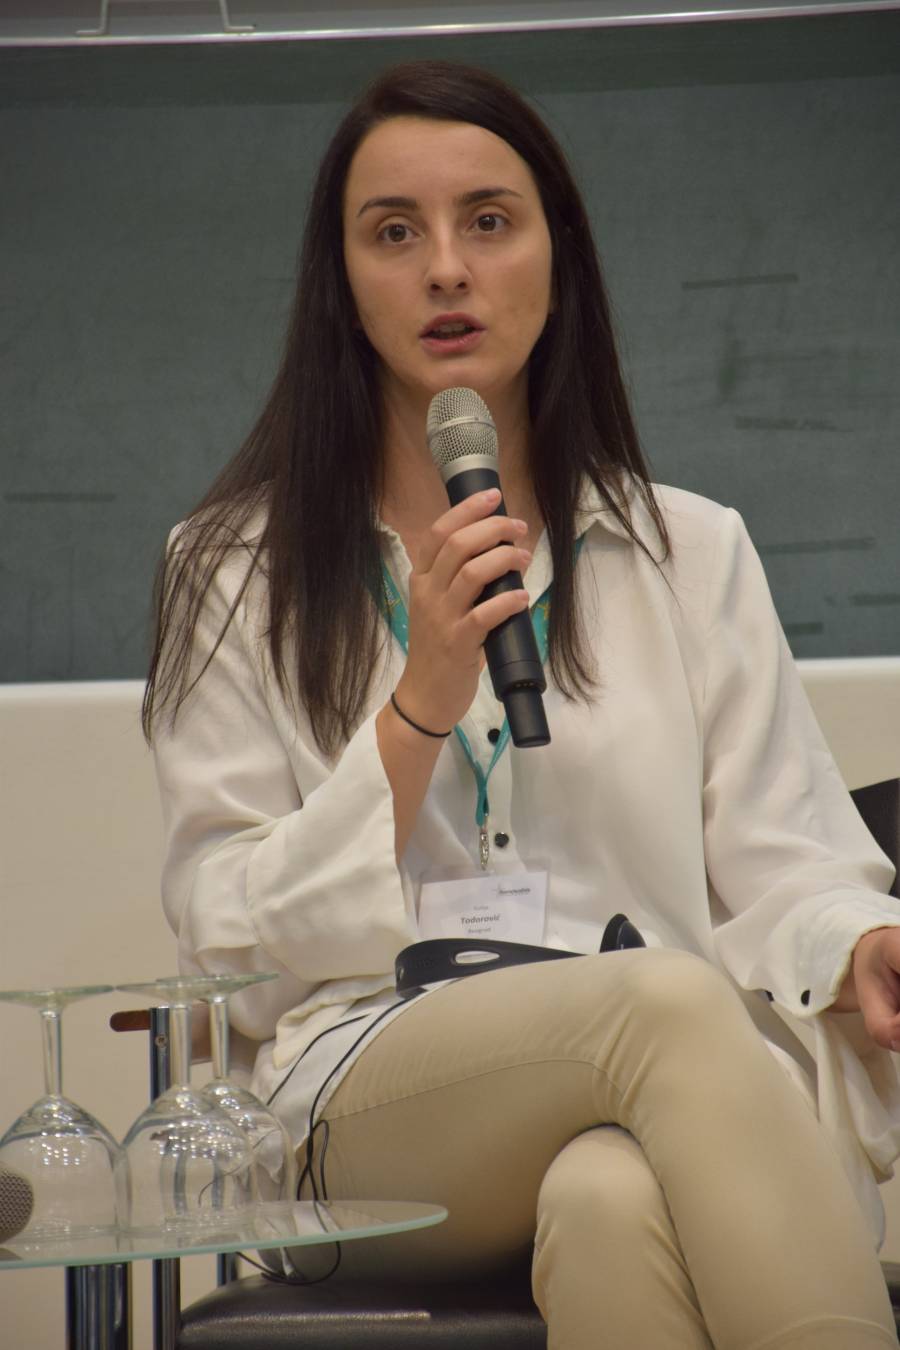 Sofija Todorović hat einen Bachelorabschluss der juristischen Fakultät der Universität Belgrad und arbeitet derzeit als Projektkoordinatorin für den Belgrader BIRN-Hub (Balkan Investigative Regional Reporting Network (BIRN Hub)).<br><small class="stackrow__imagesource">Quelle: Renovabis </small>